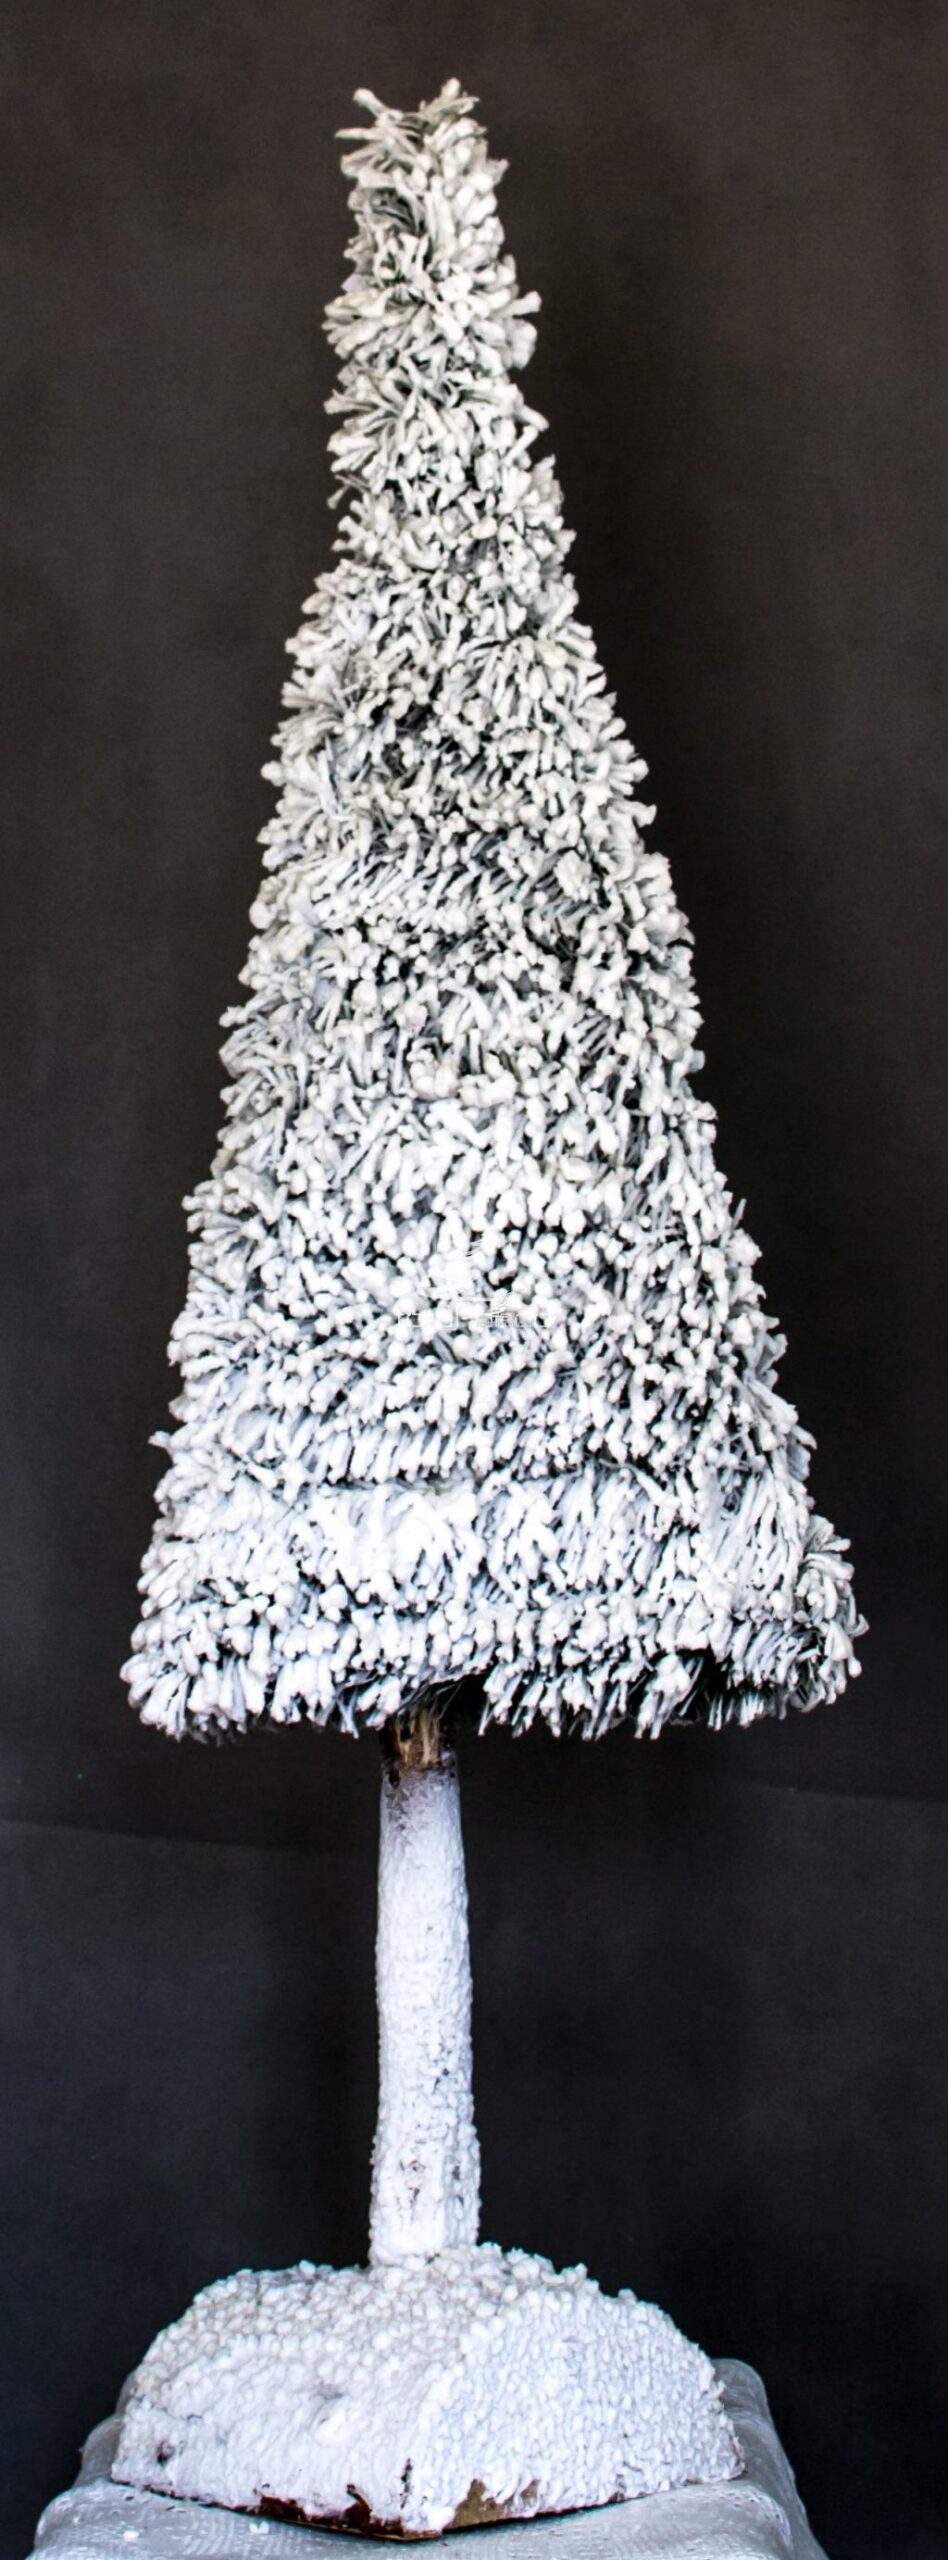 biała choinka śnieżona/nowoczesna dekoracja świąteczna